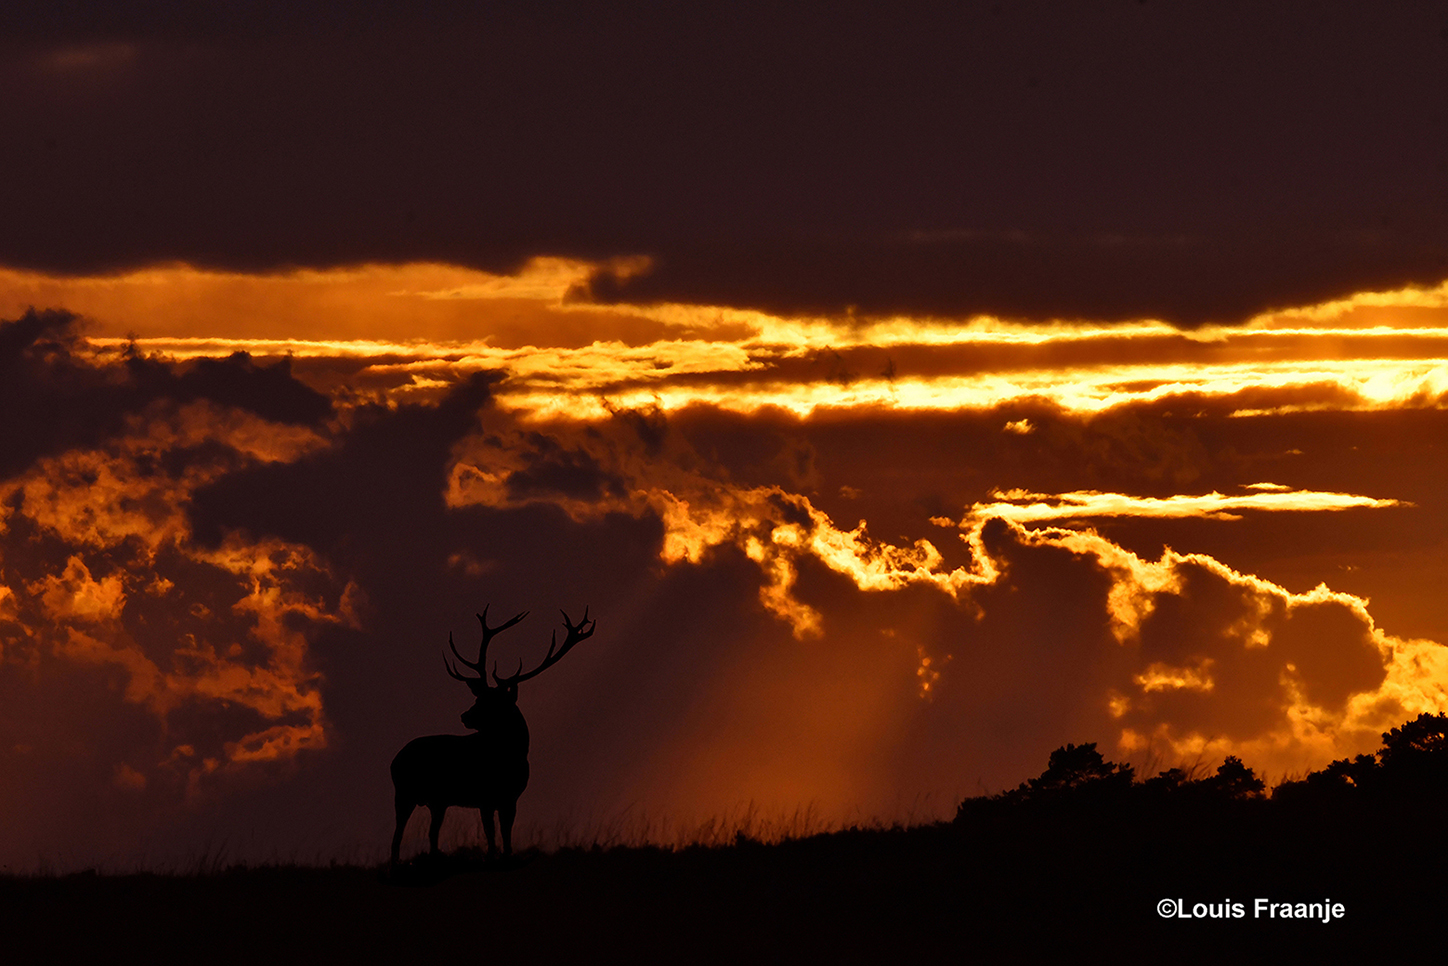 Het hert op de heuvel en de laatste zonnestralen aan de avondhemel, zijn een prachtige afsluiter van deze bronstavond op de Hoge Veluwe – Foto: ©Louis Fraanje